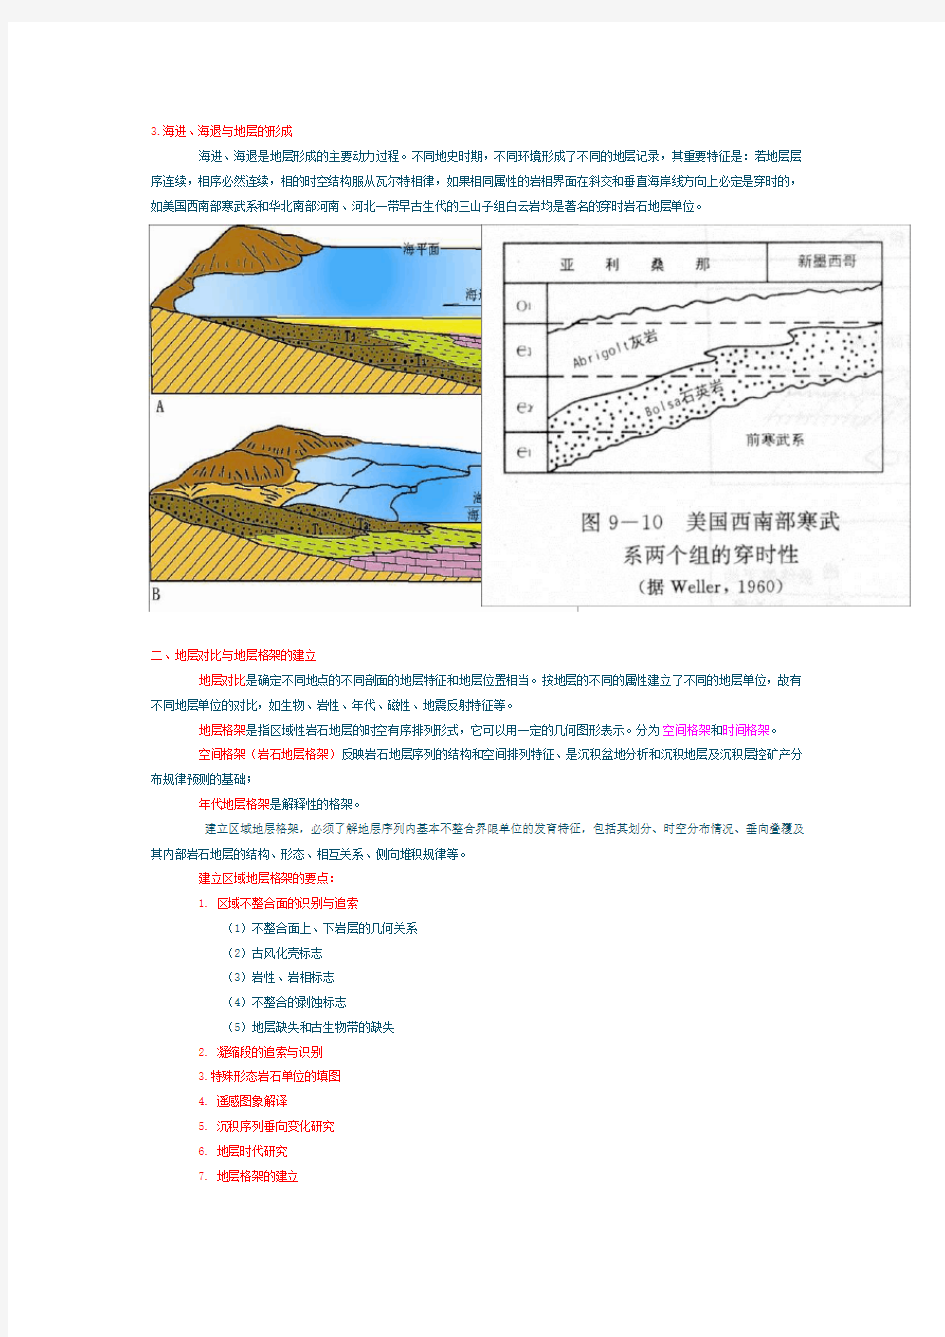 沉积盆地及古地理分析